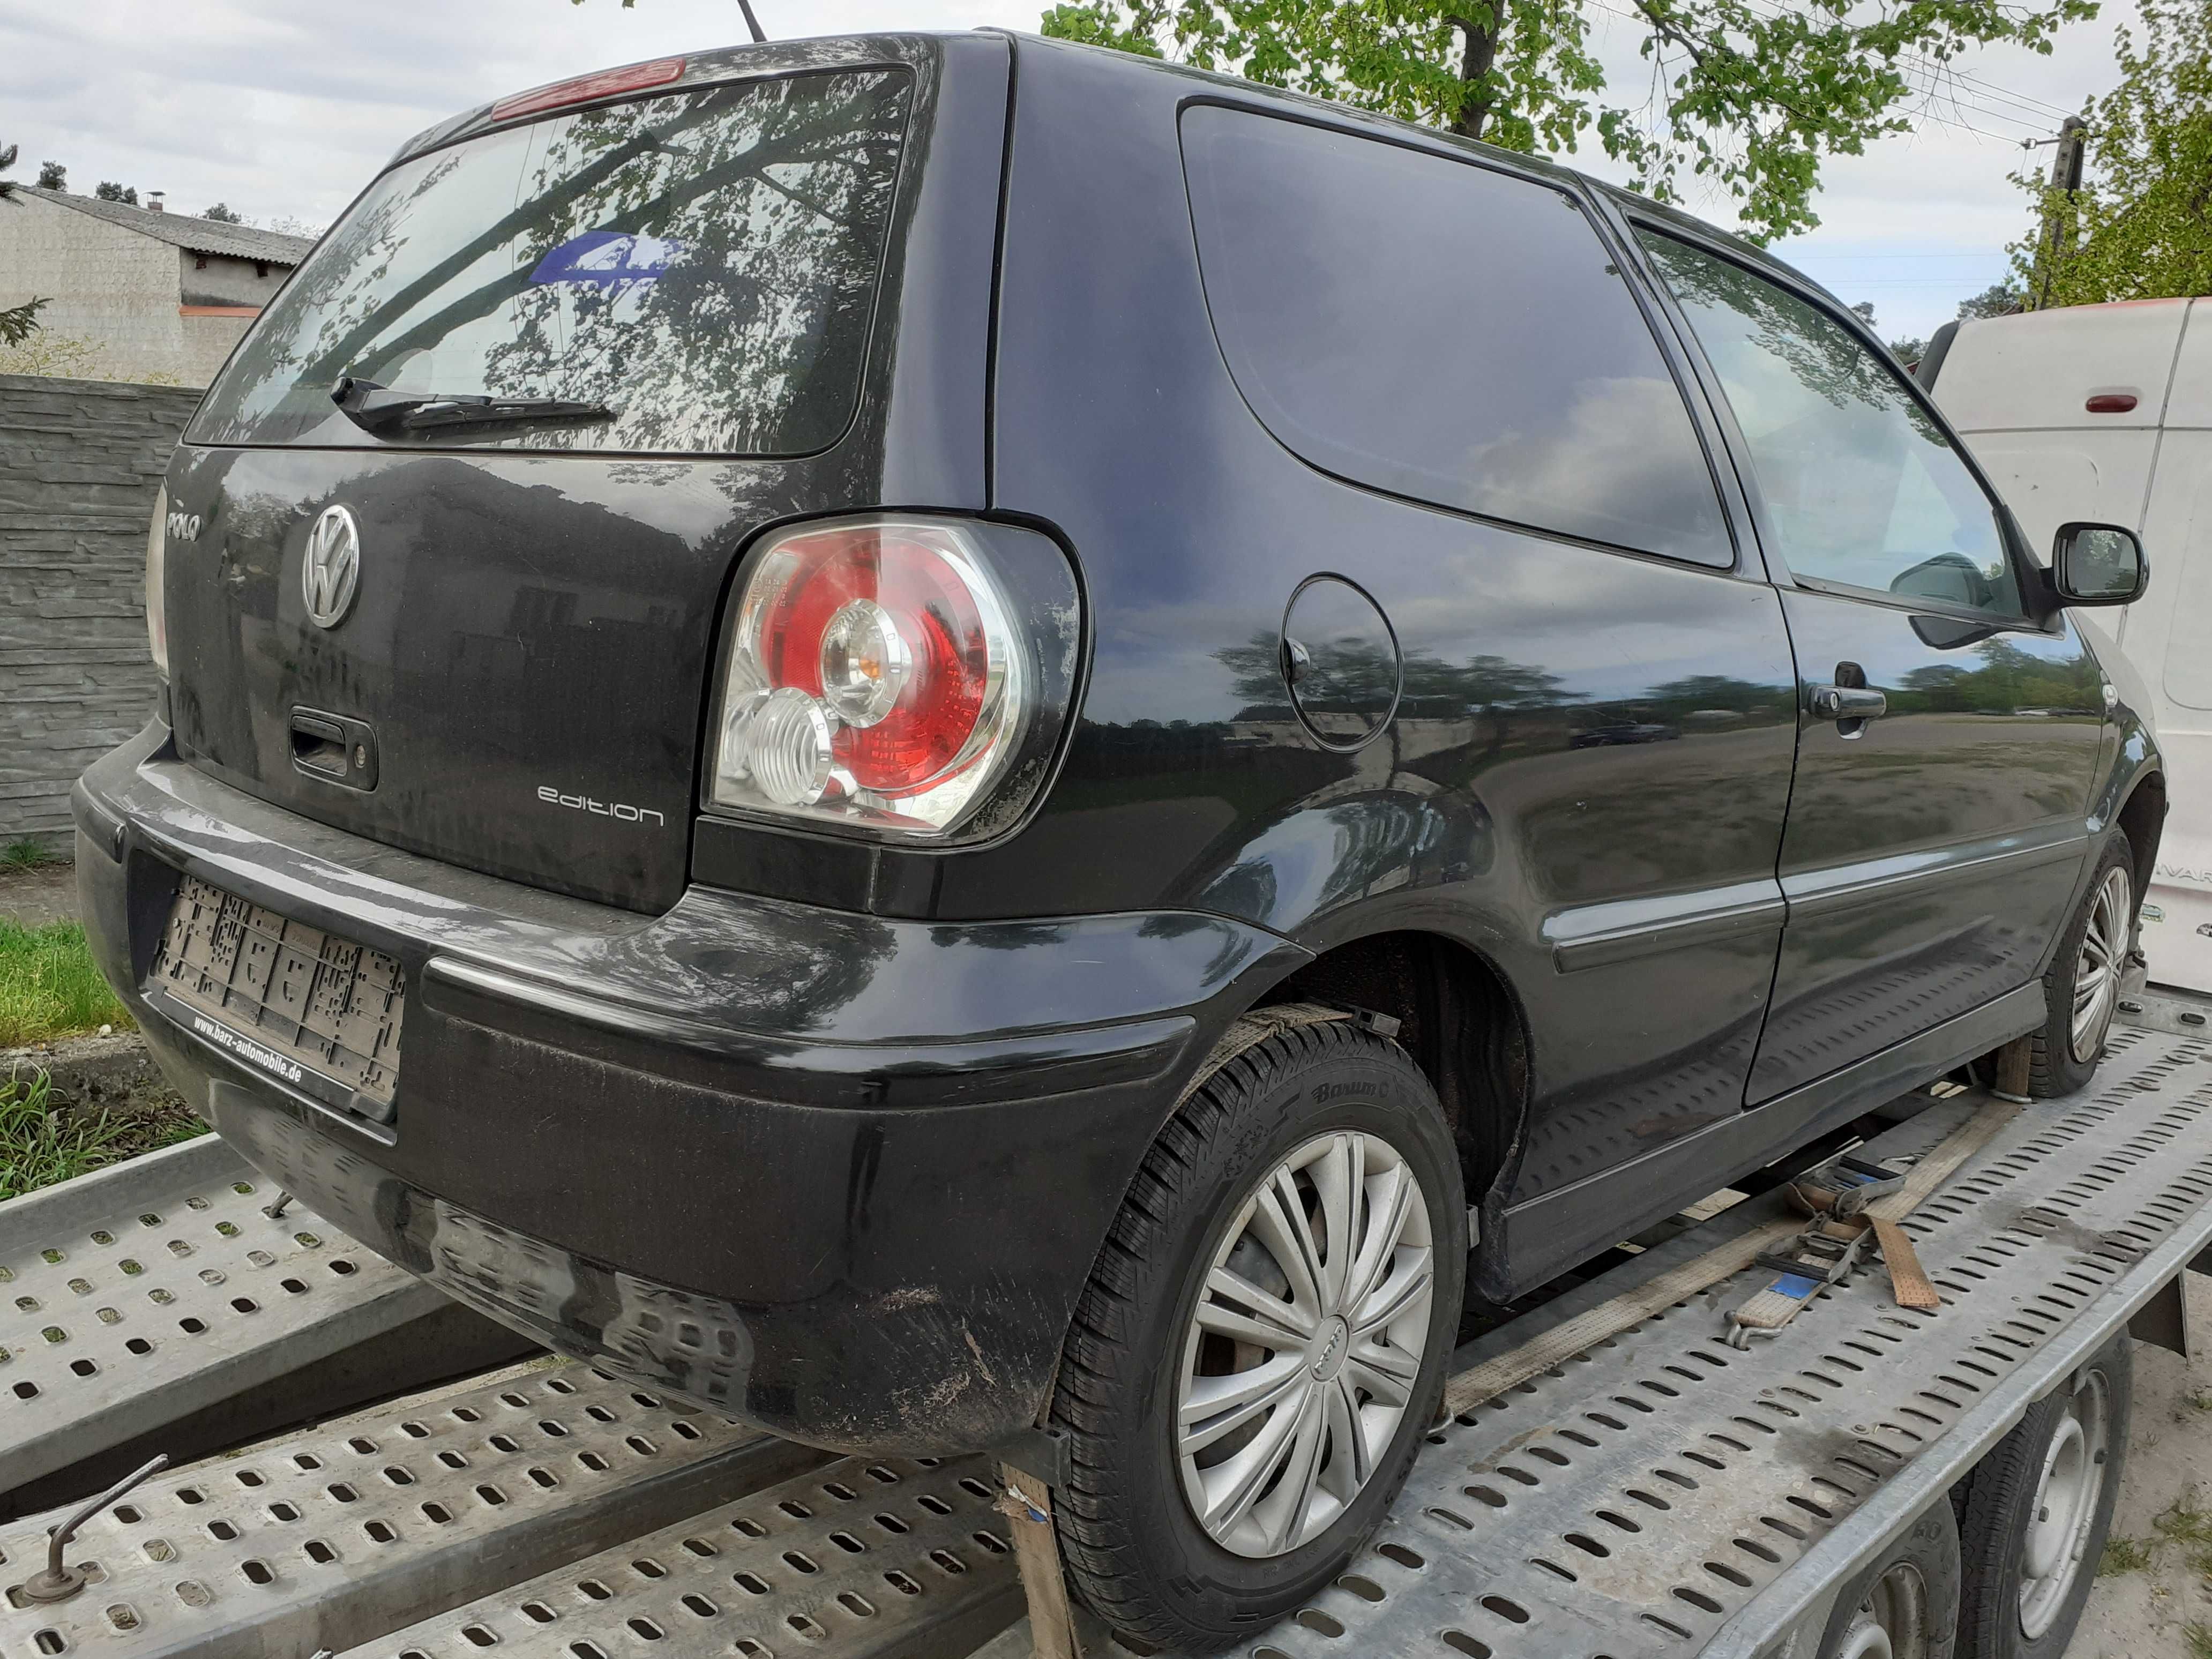 VW POLO 1,0 MPI Benzyna 2001r sprowadzony do opłat